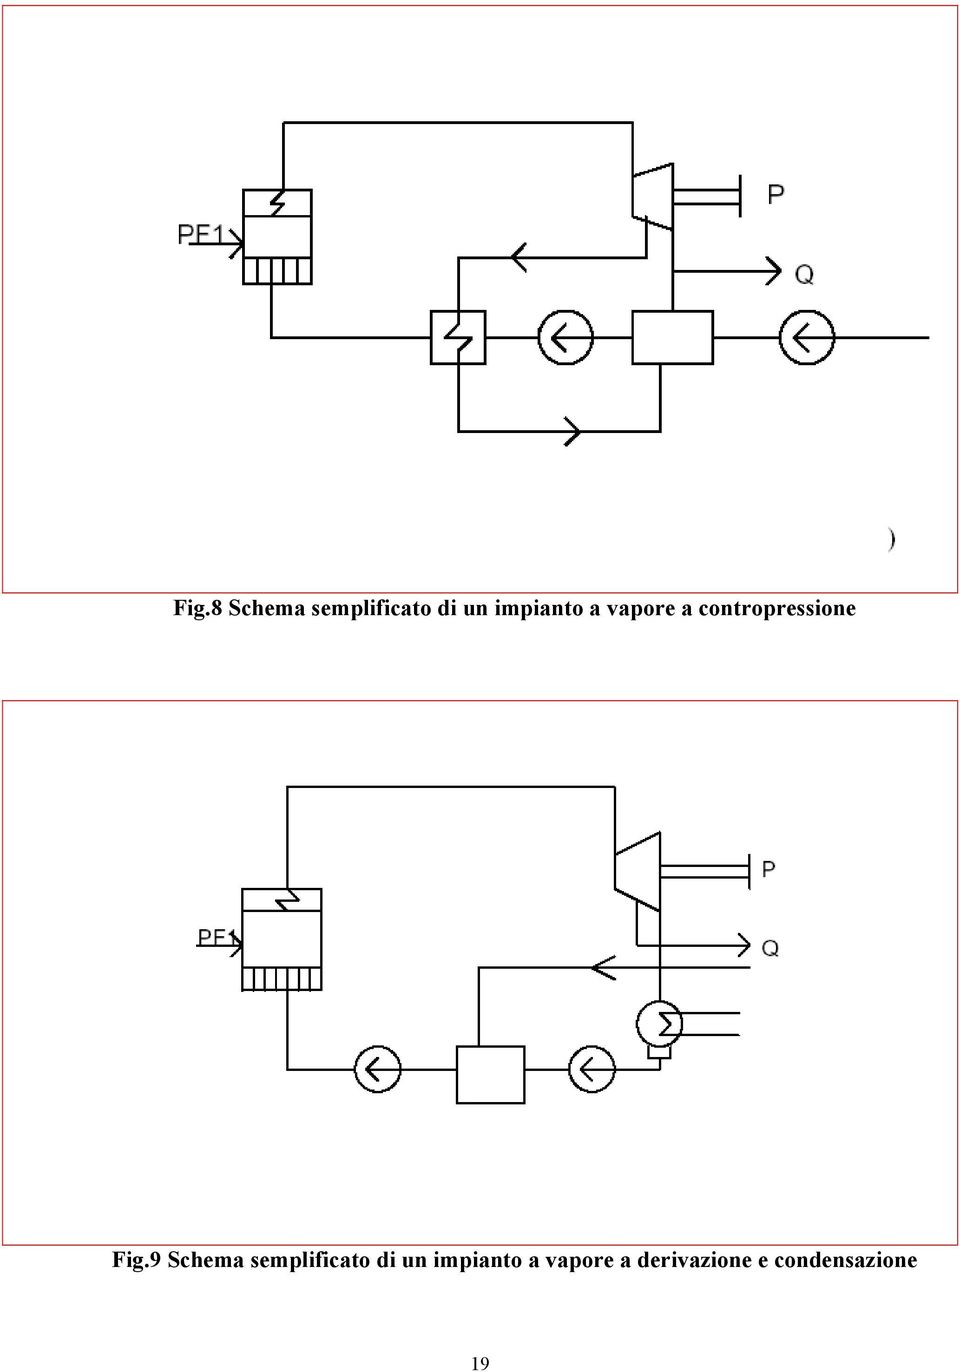 Fig.9 Schema semplificato di un